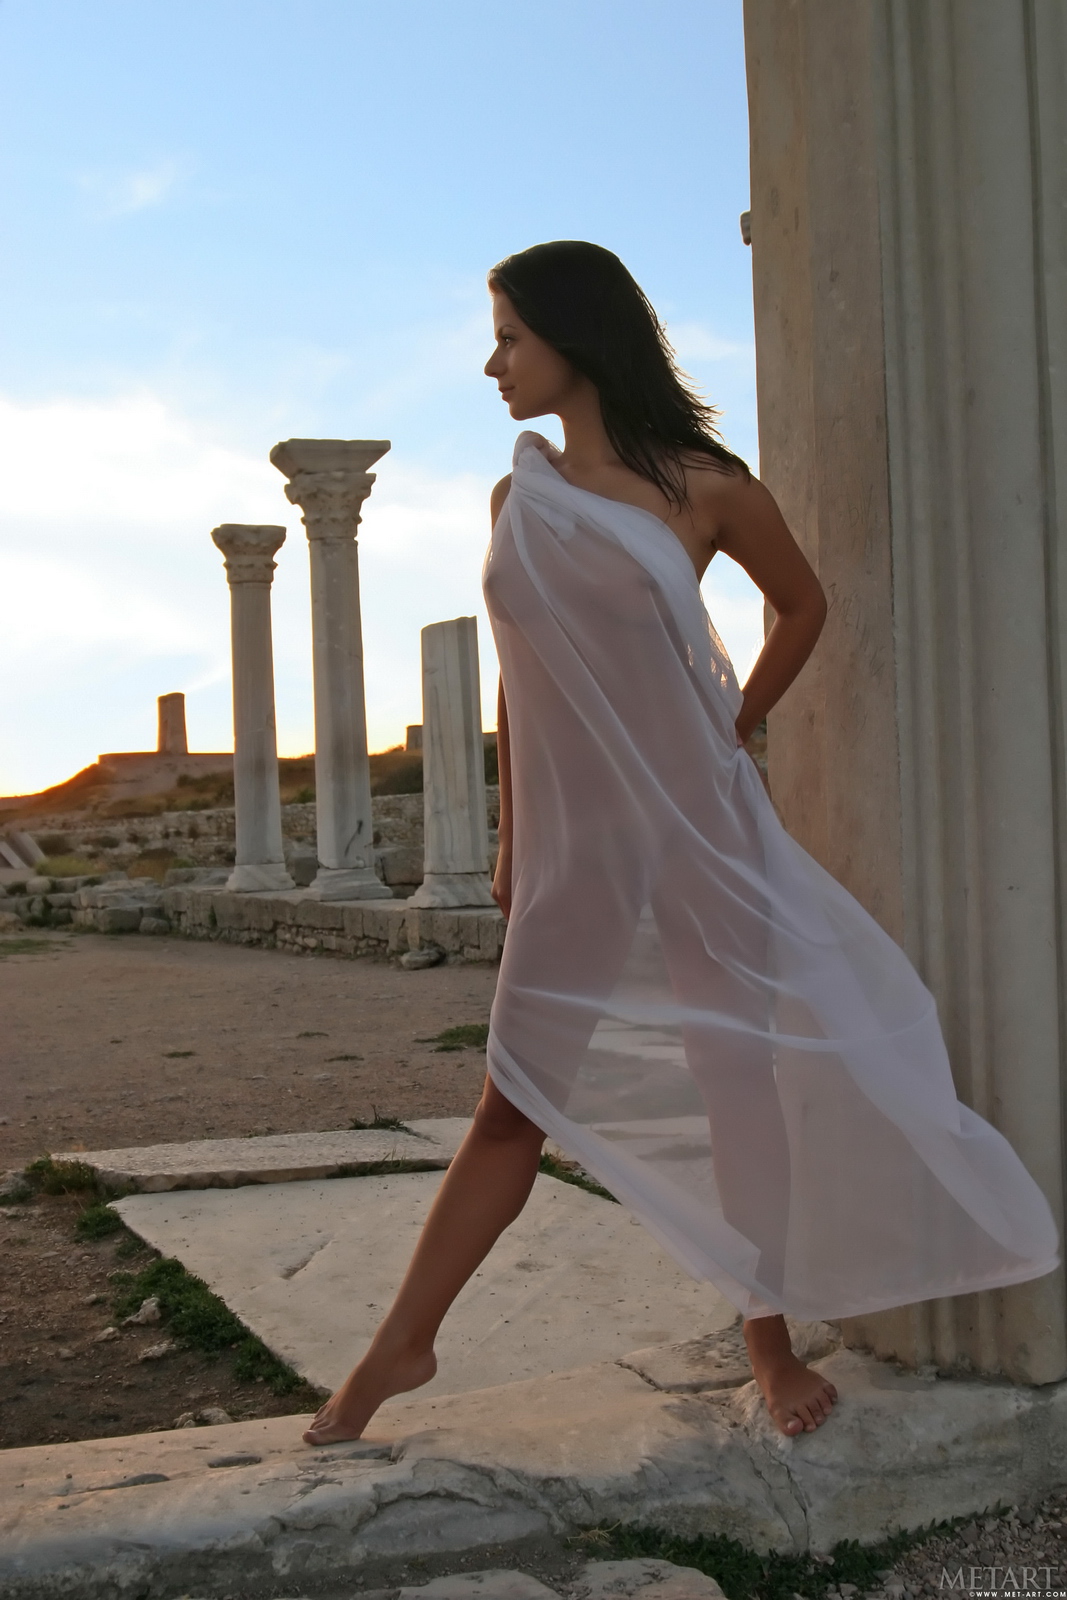 tina-d-nude-greek-columns-sunset-metart-03